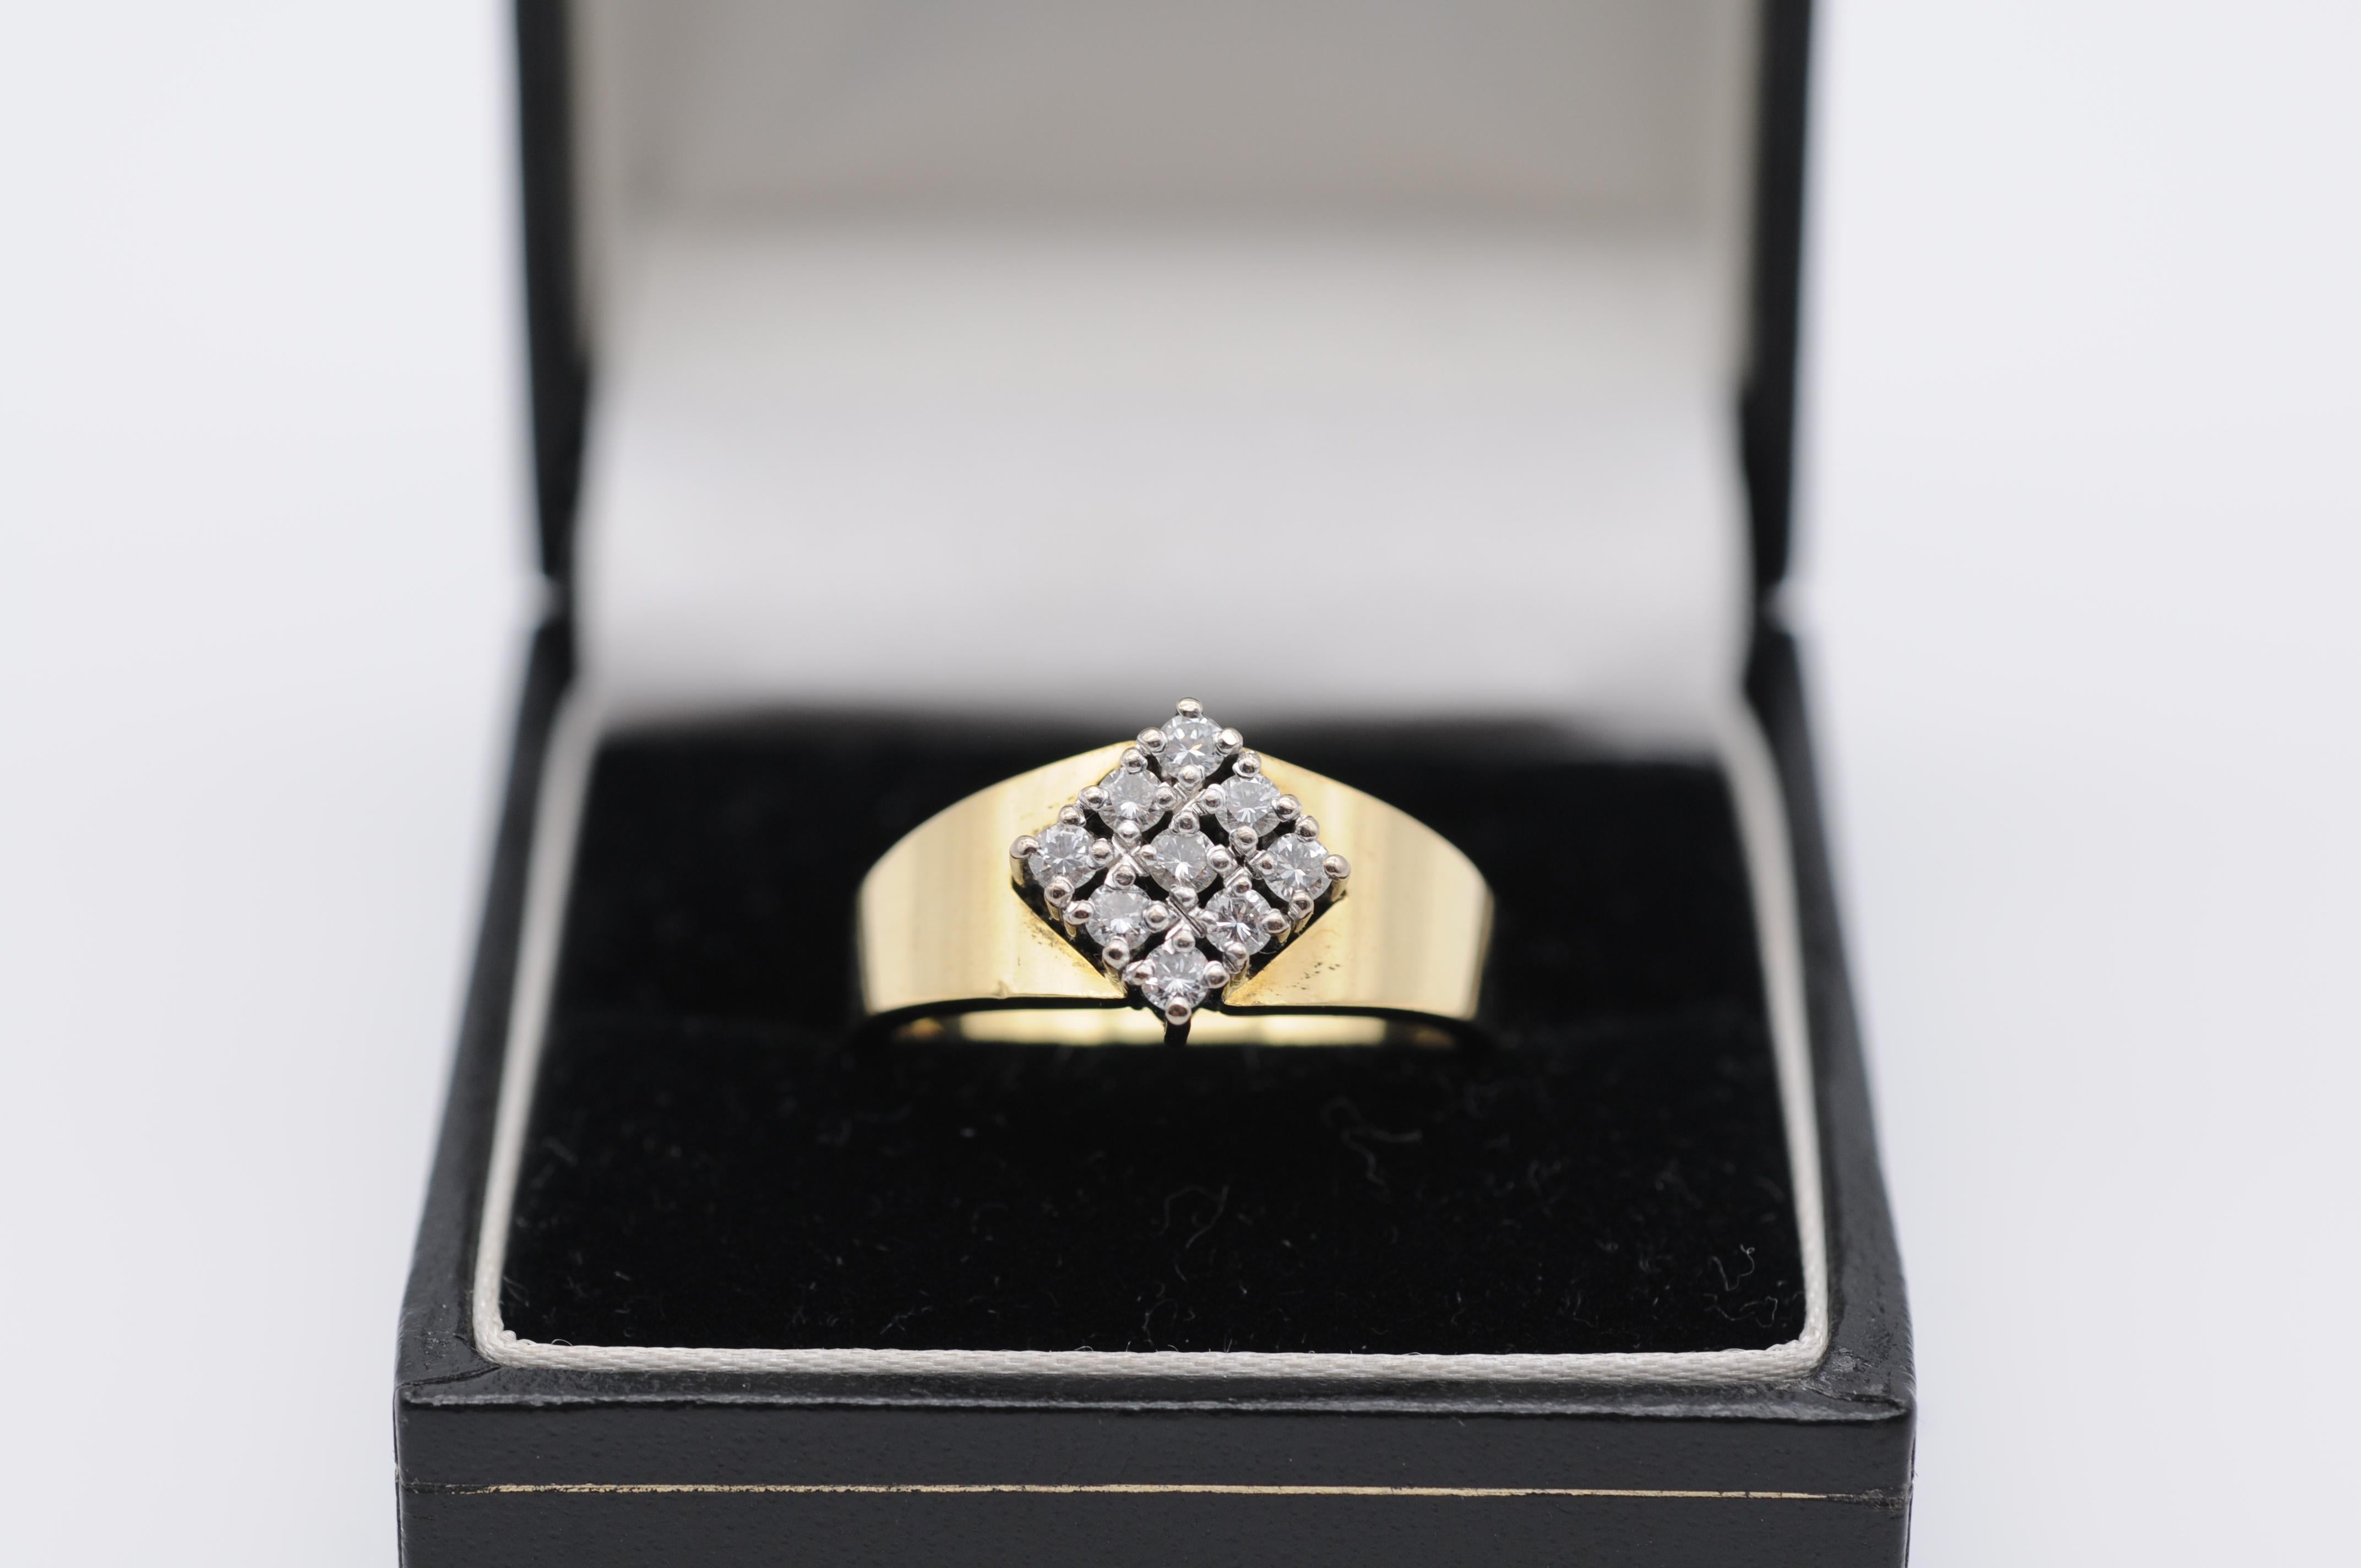 Cette magnifique bague en diamant est un véritable symbole d'élégance et de sophistication. Réalisée en or jaune 18 carats, cette bague est ornée d'un diamant magnifiquement taillé en forme de diamant, serti dans une monture à griffes. La brillance